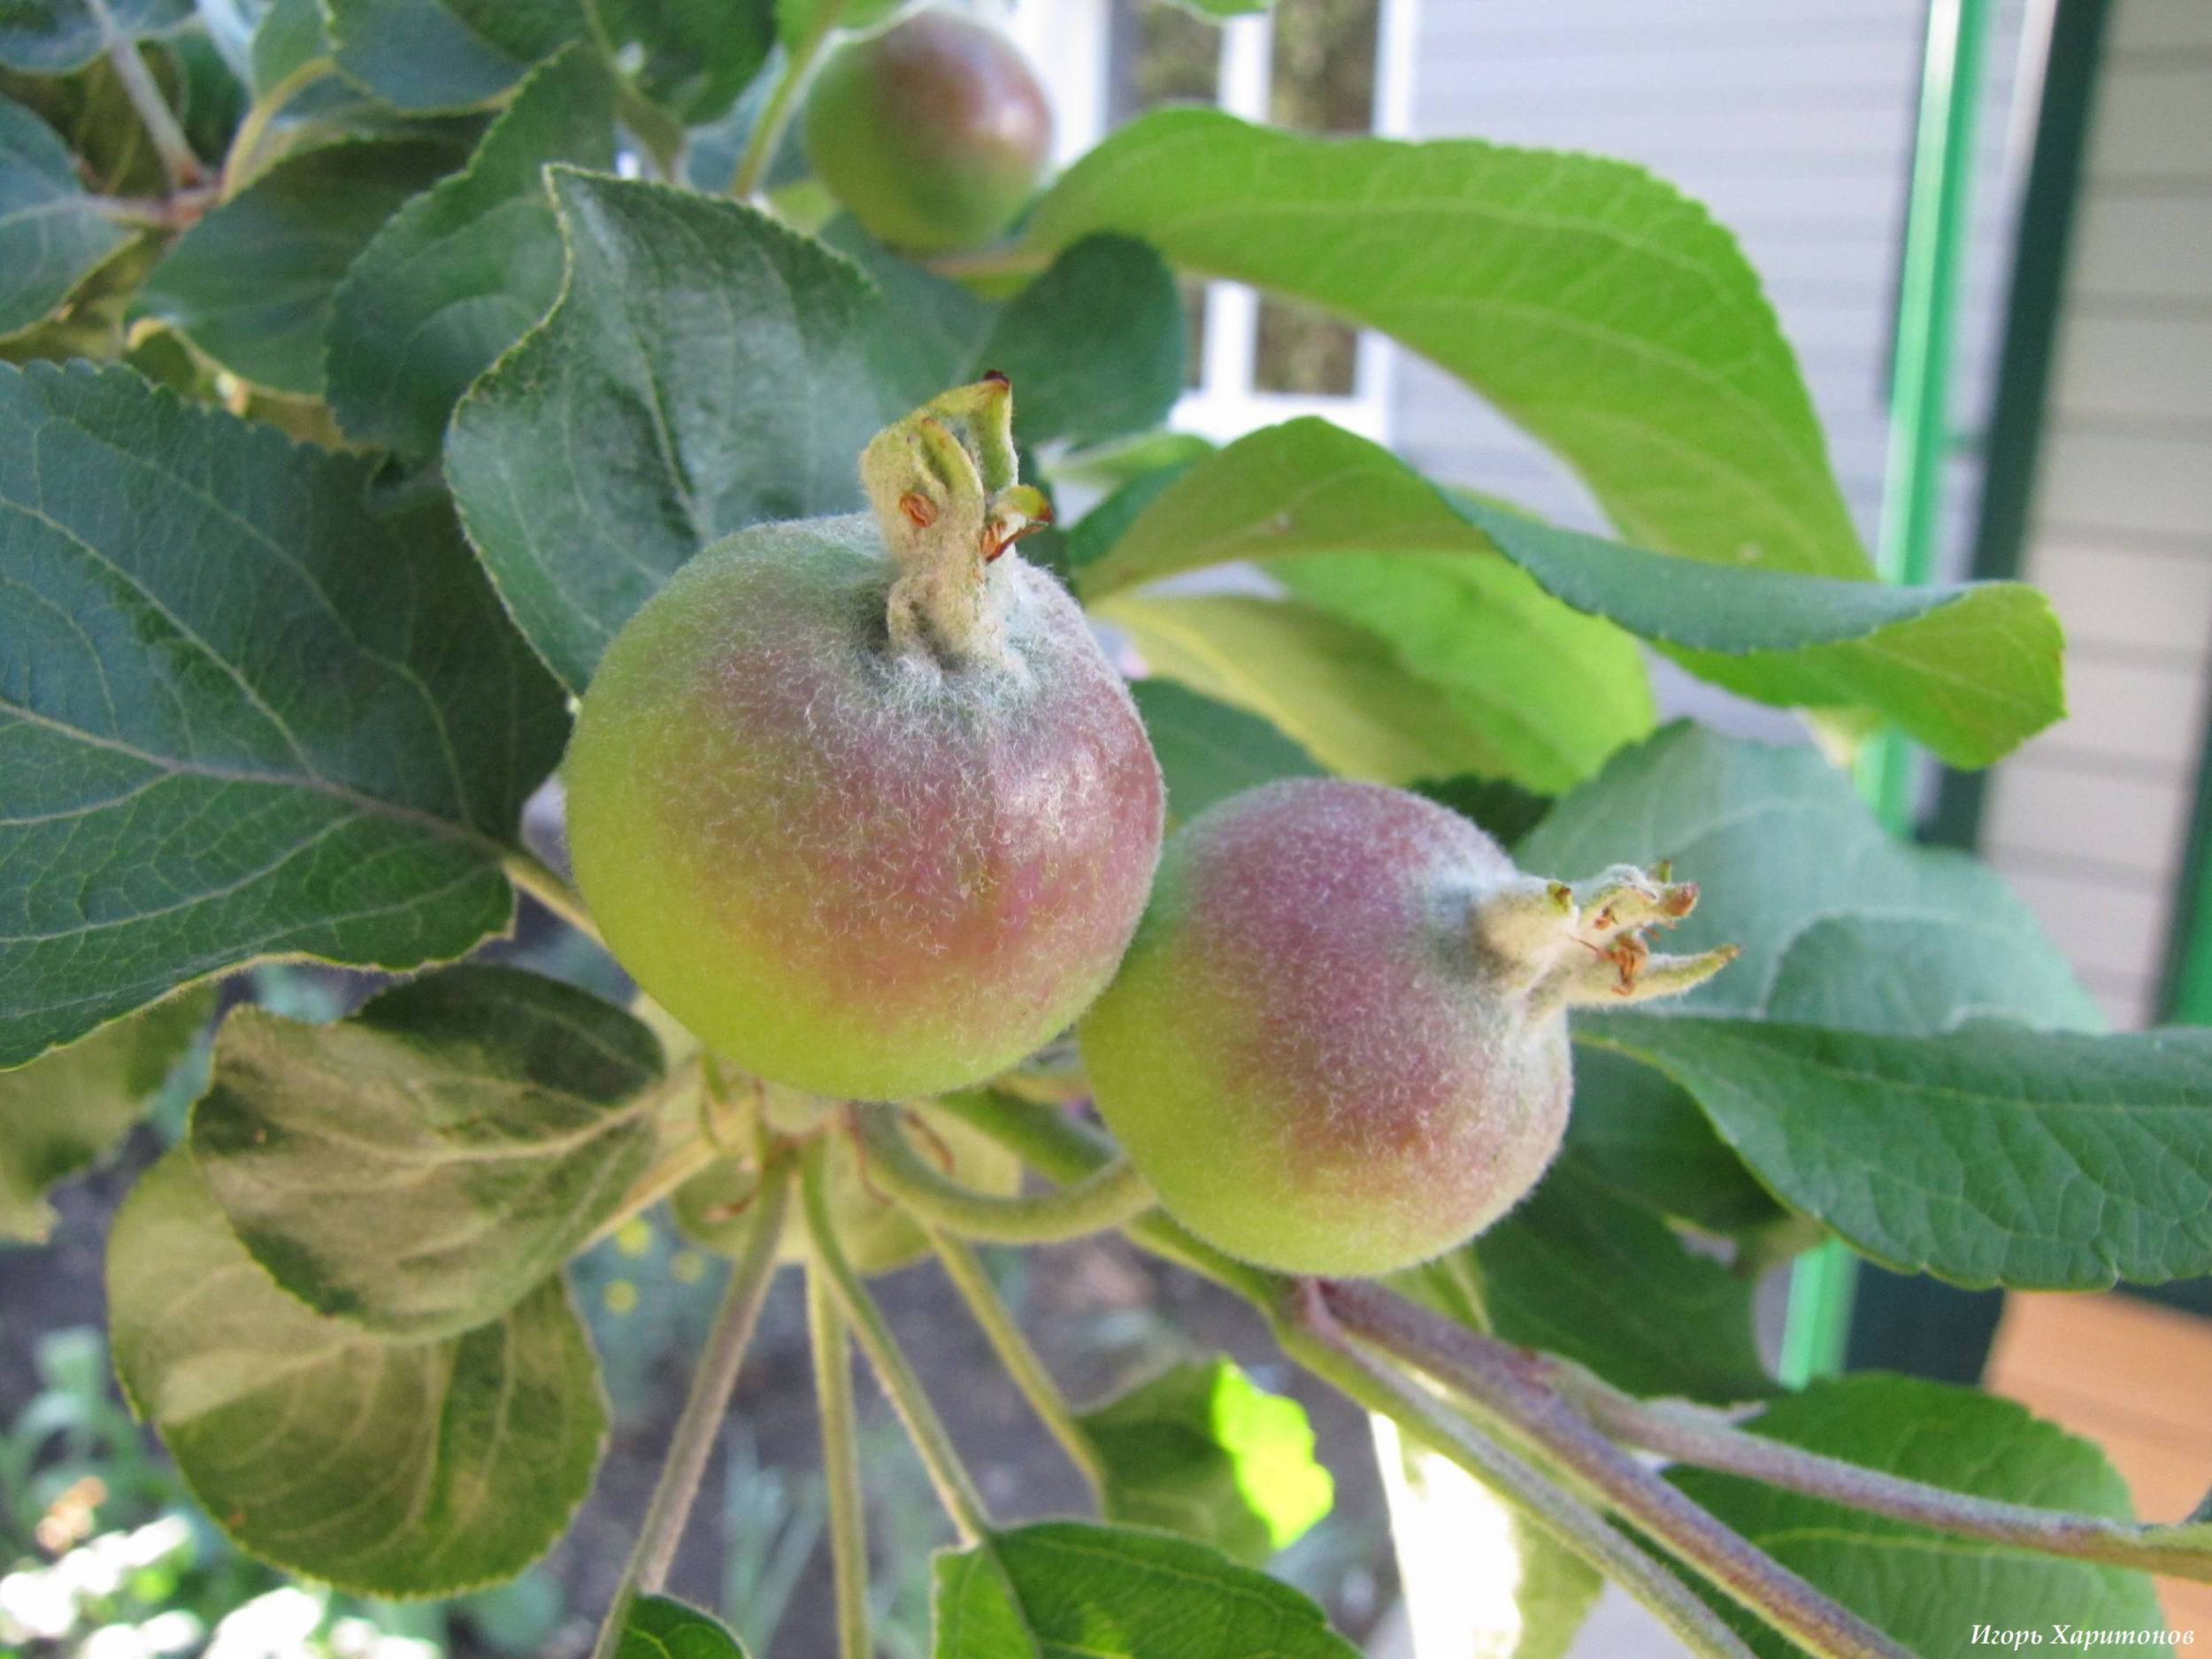 Почему яблоня сбрасывает плоды до их созревания?